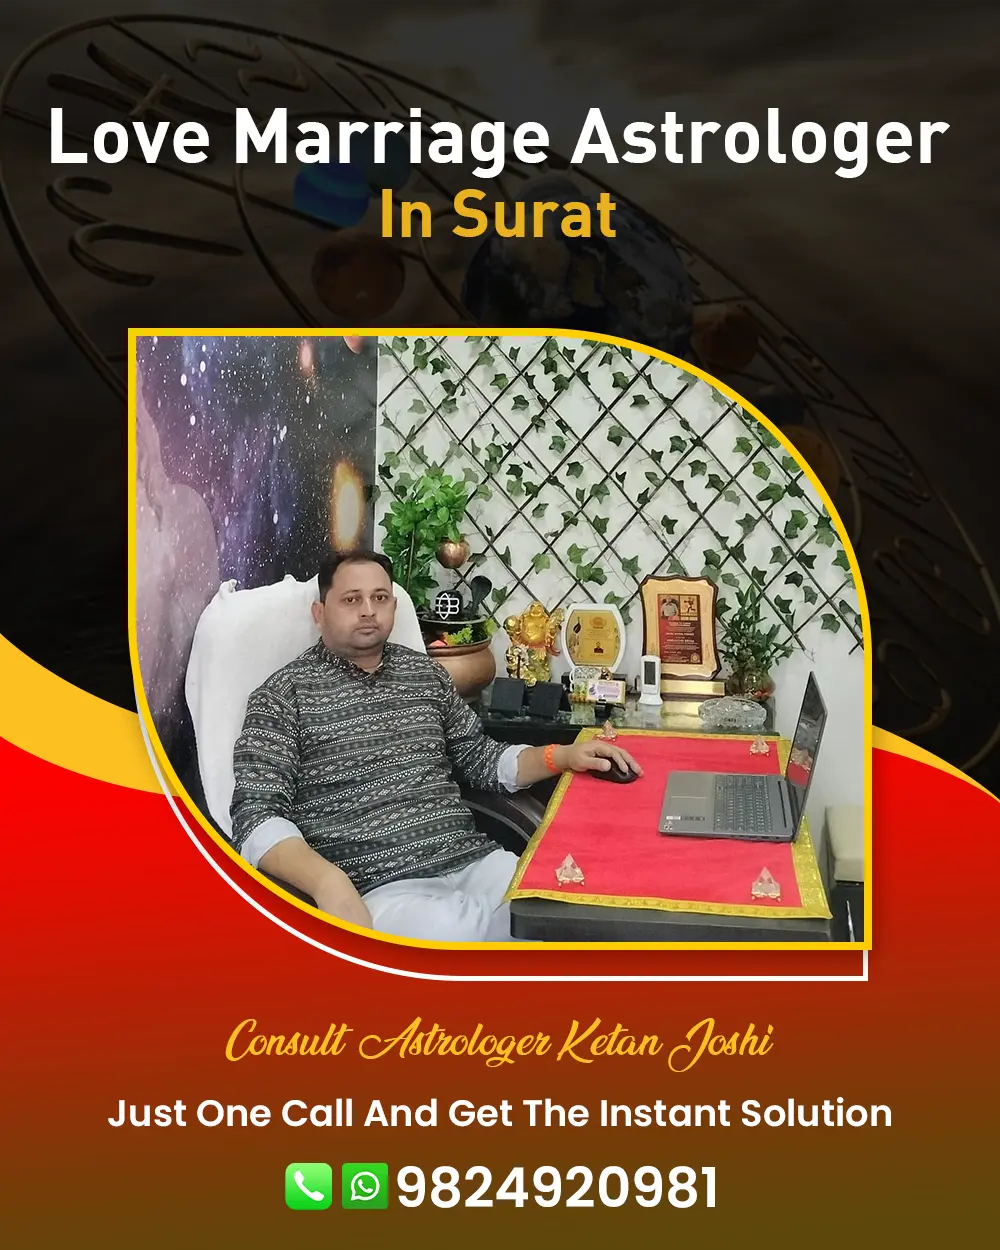 Love Marriage Astrologer In Surat